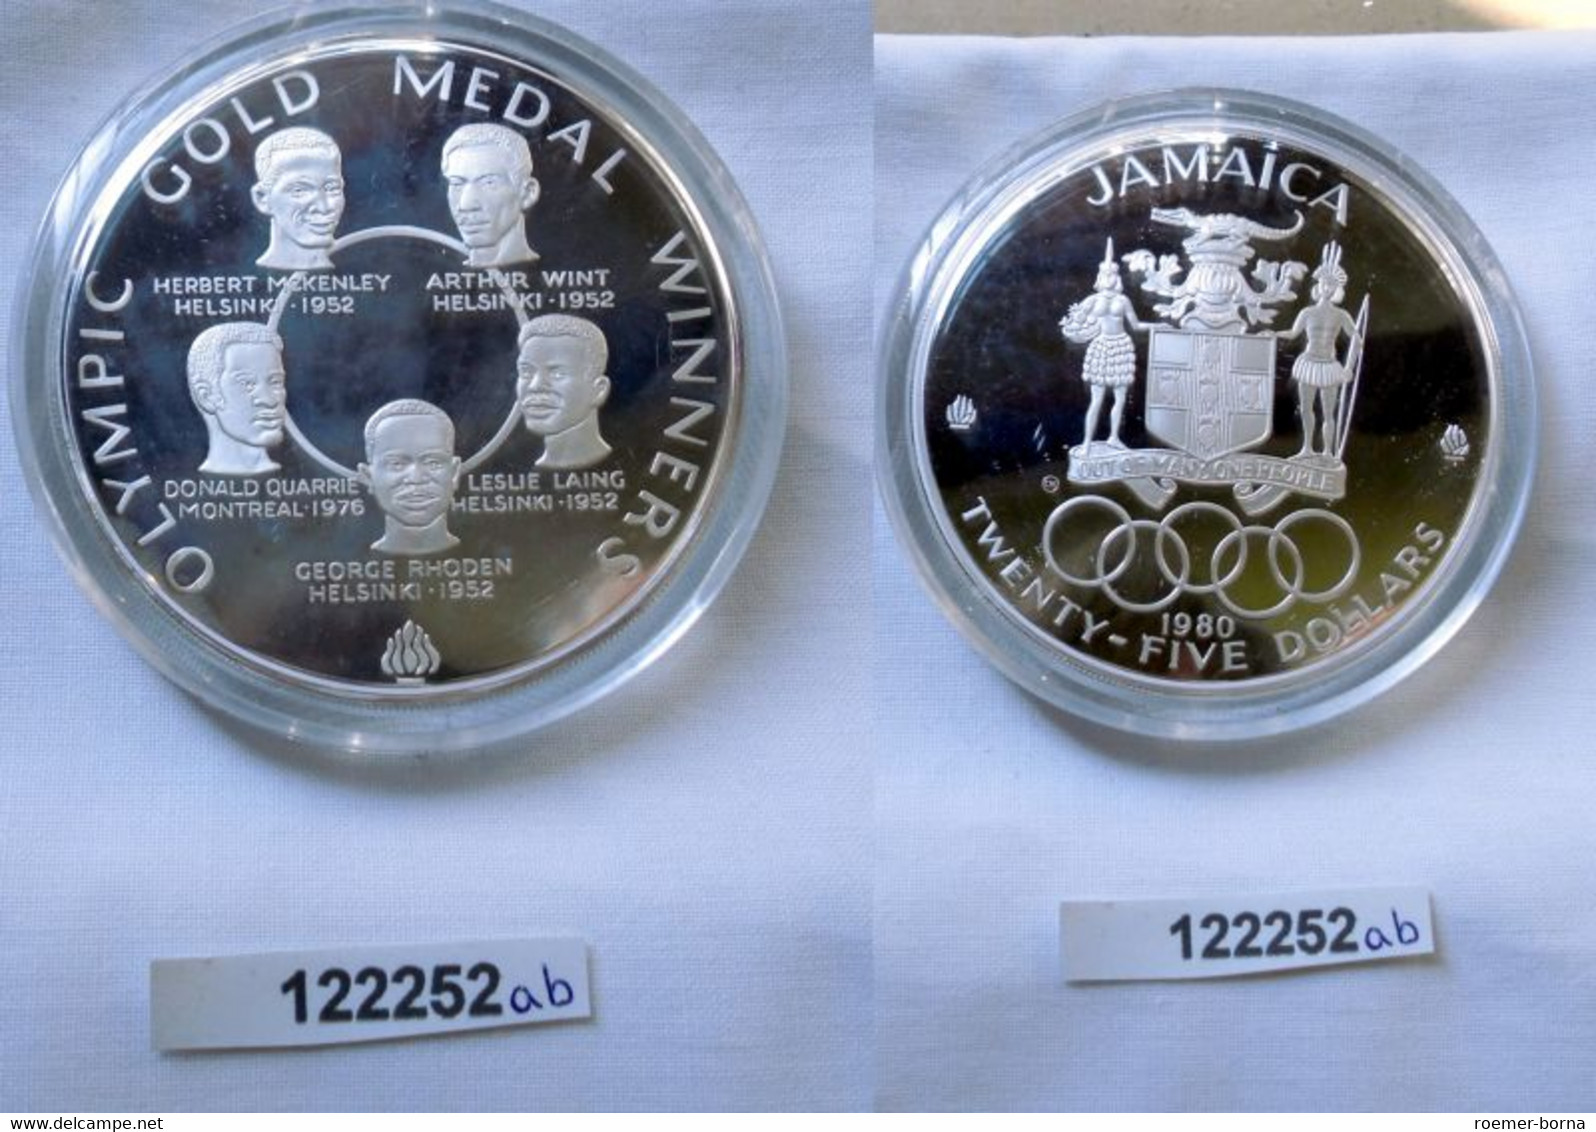 25 Dollar Silber Münze Jamaica Olympische Spiele 1980 OVP (122252) - Trinité & Tobago